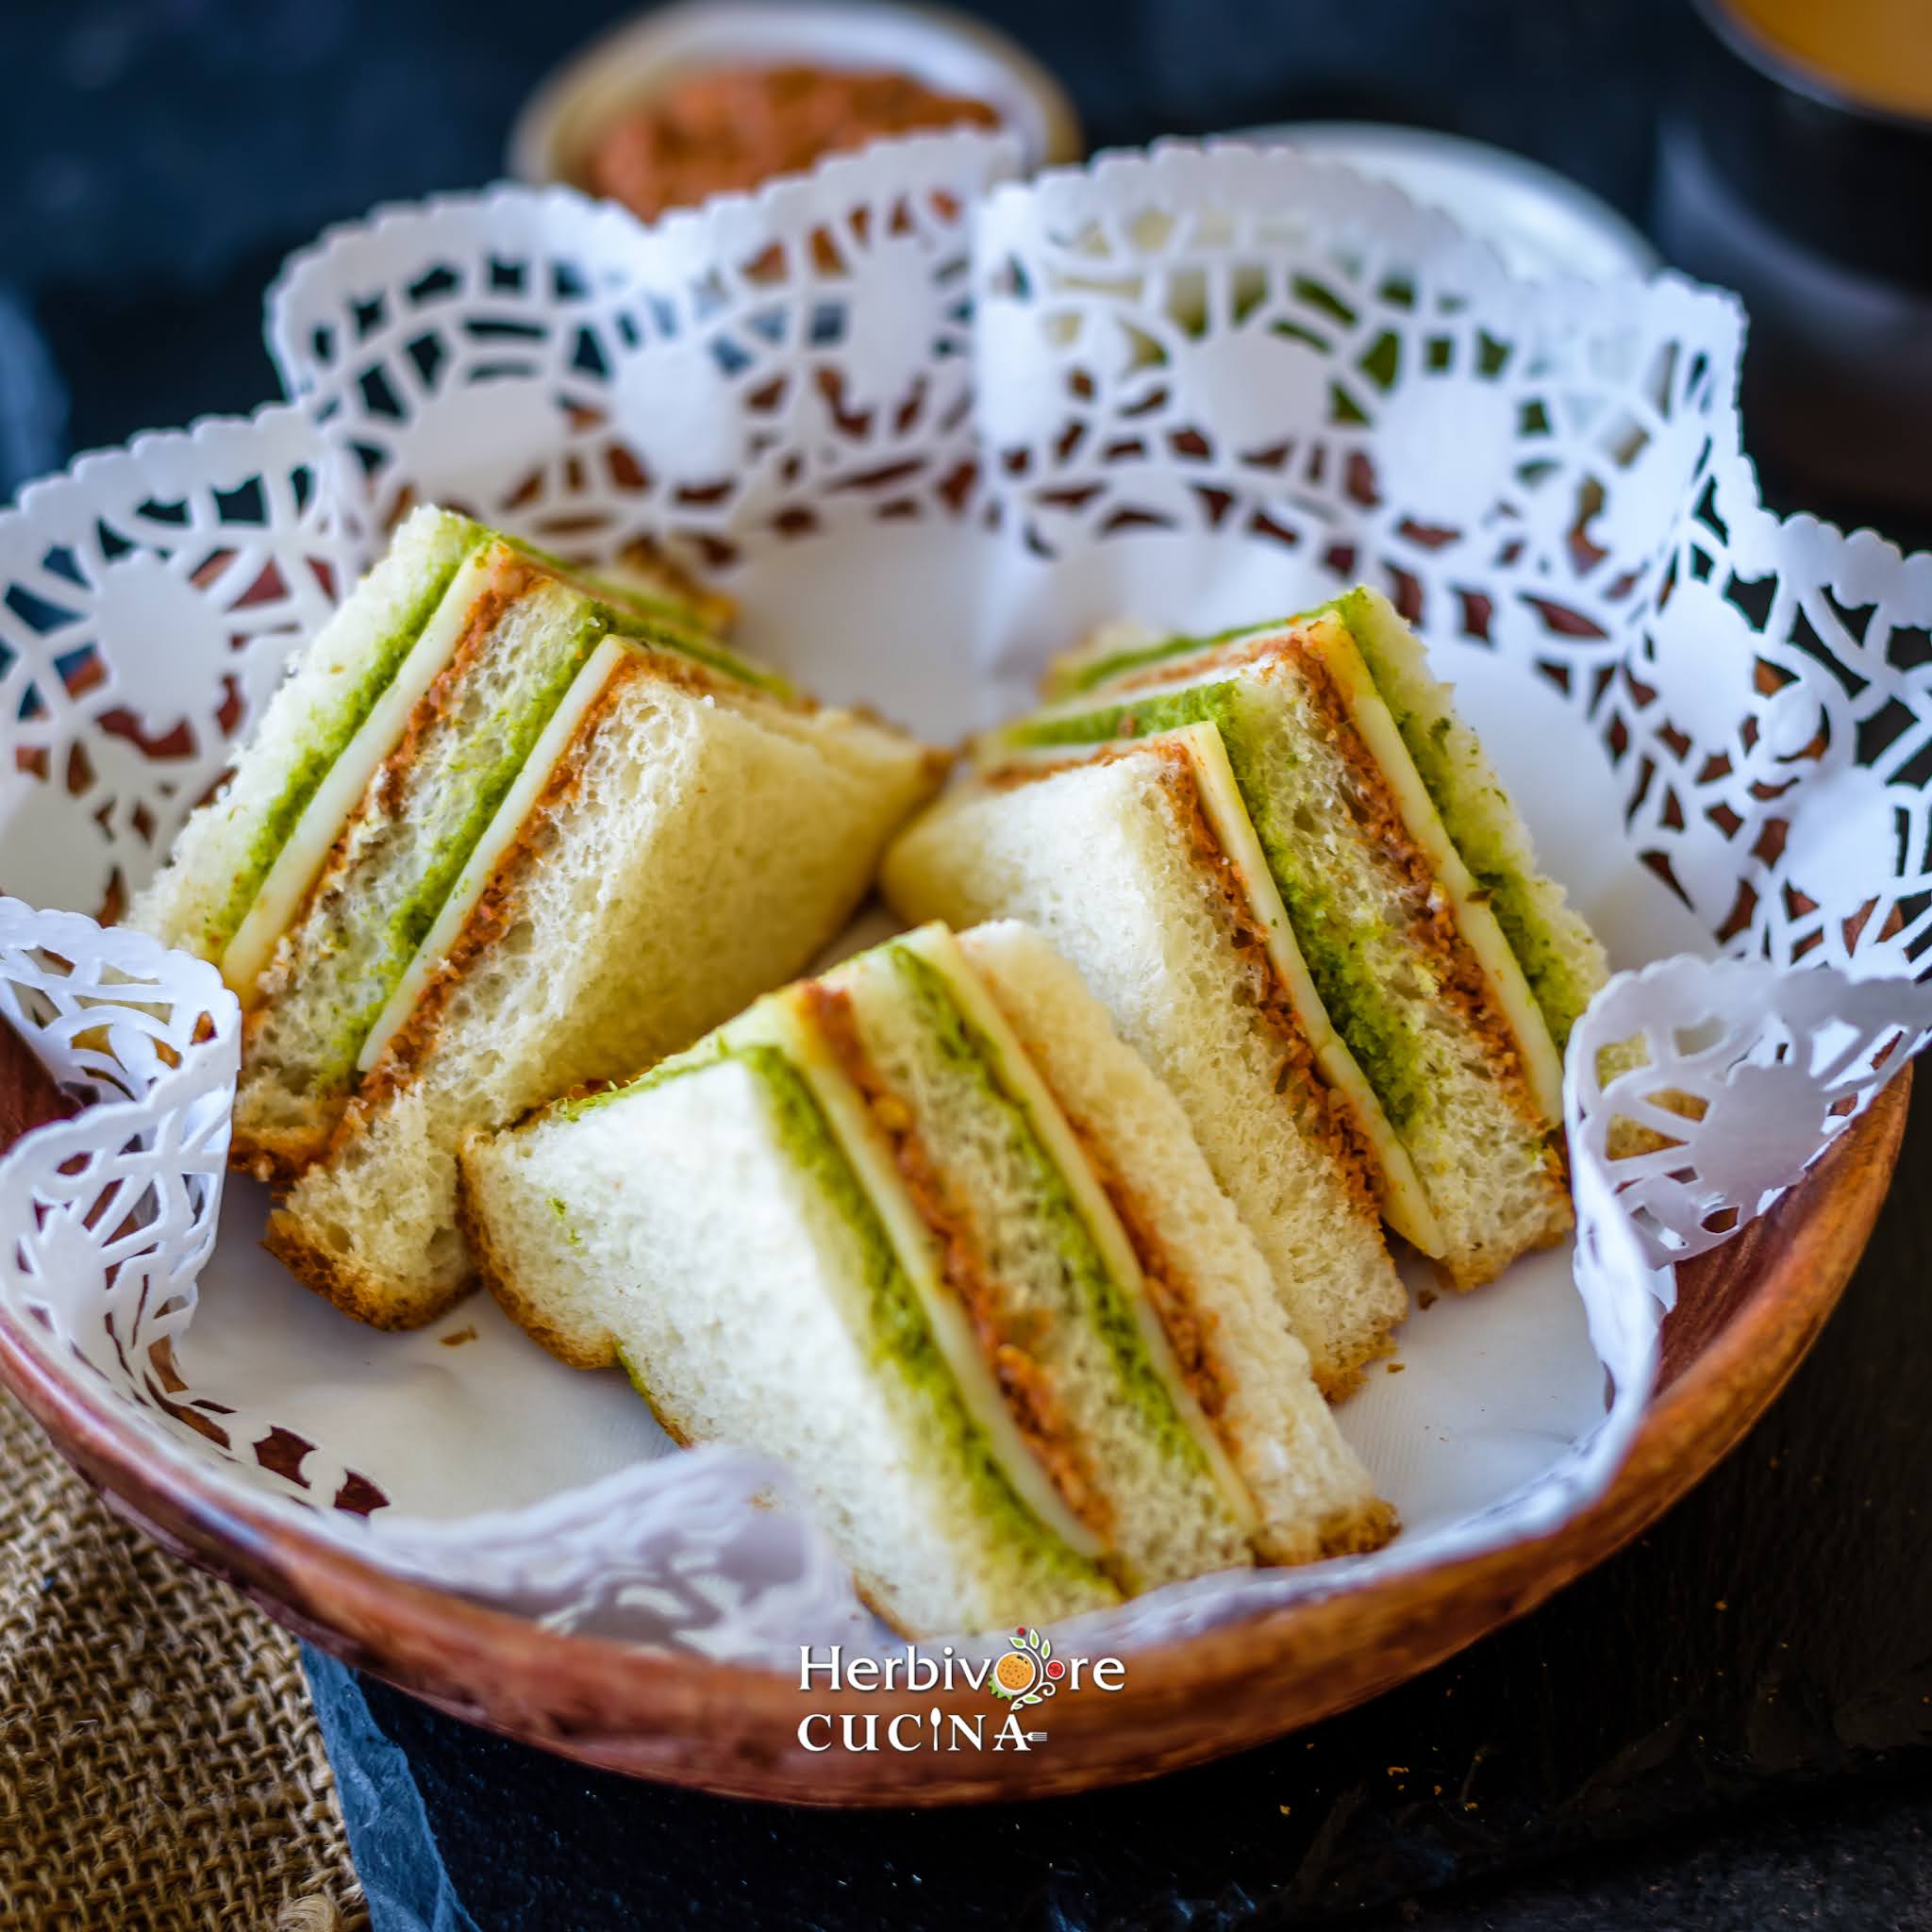 Tricolor sandwiches in a tea doily